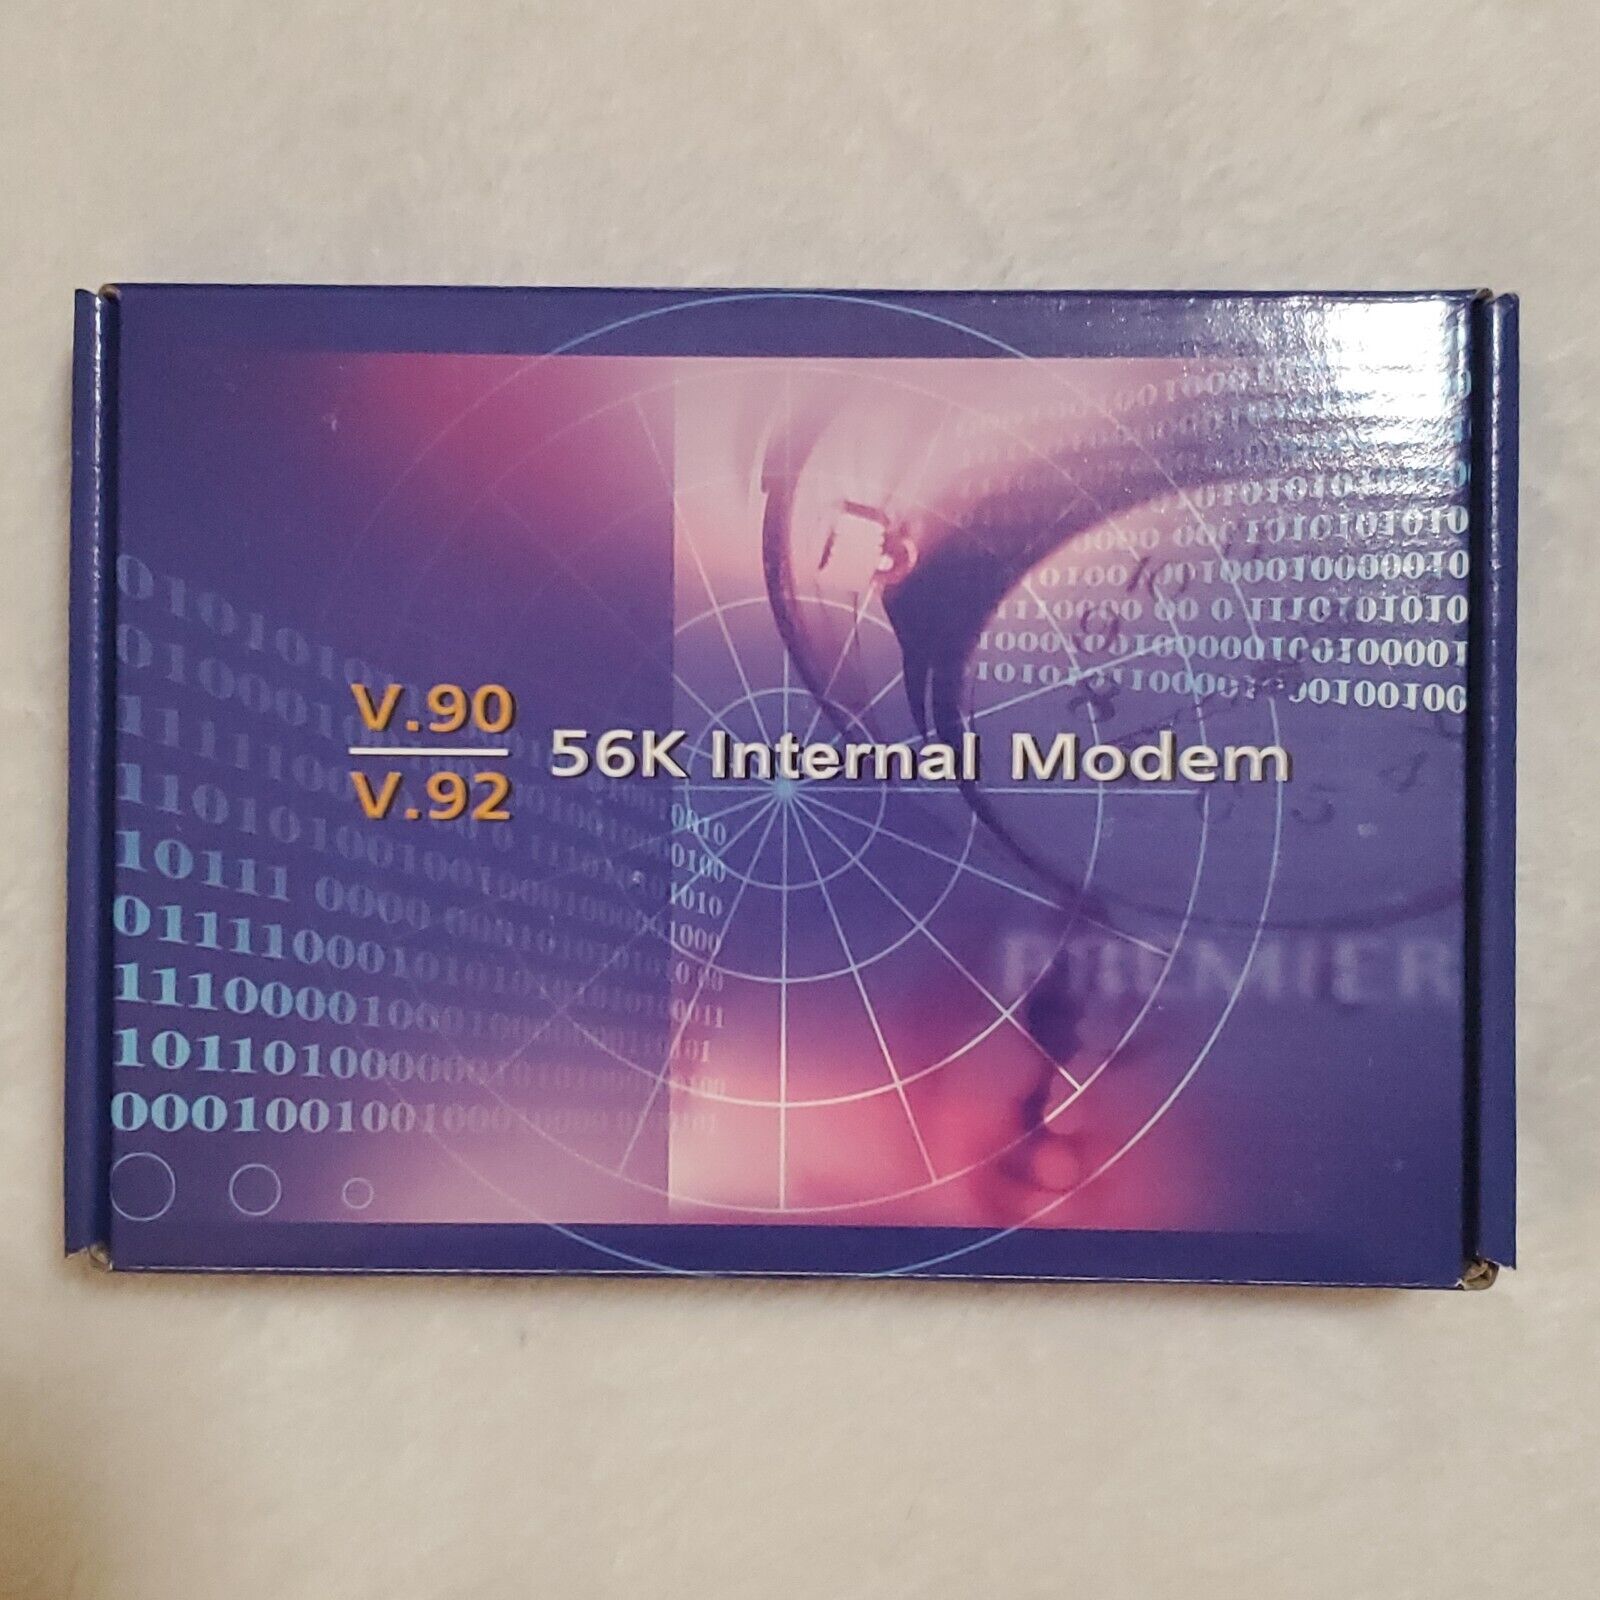 V.90 V.92 56K Internal Modem